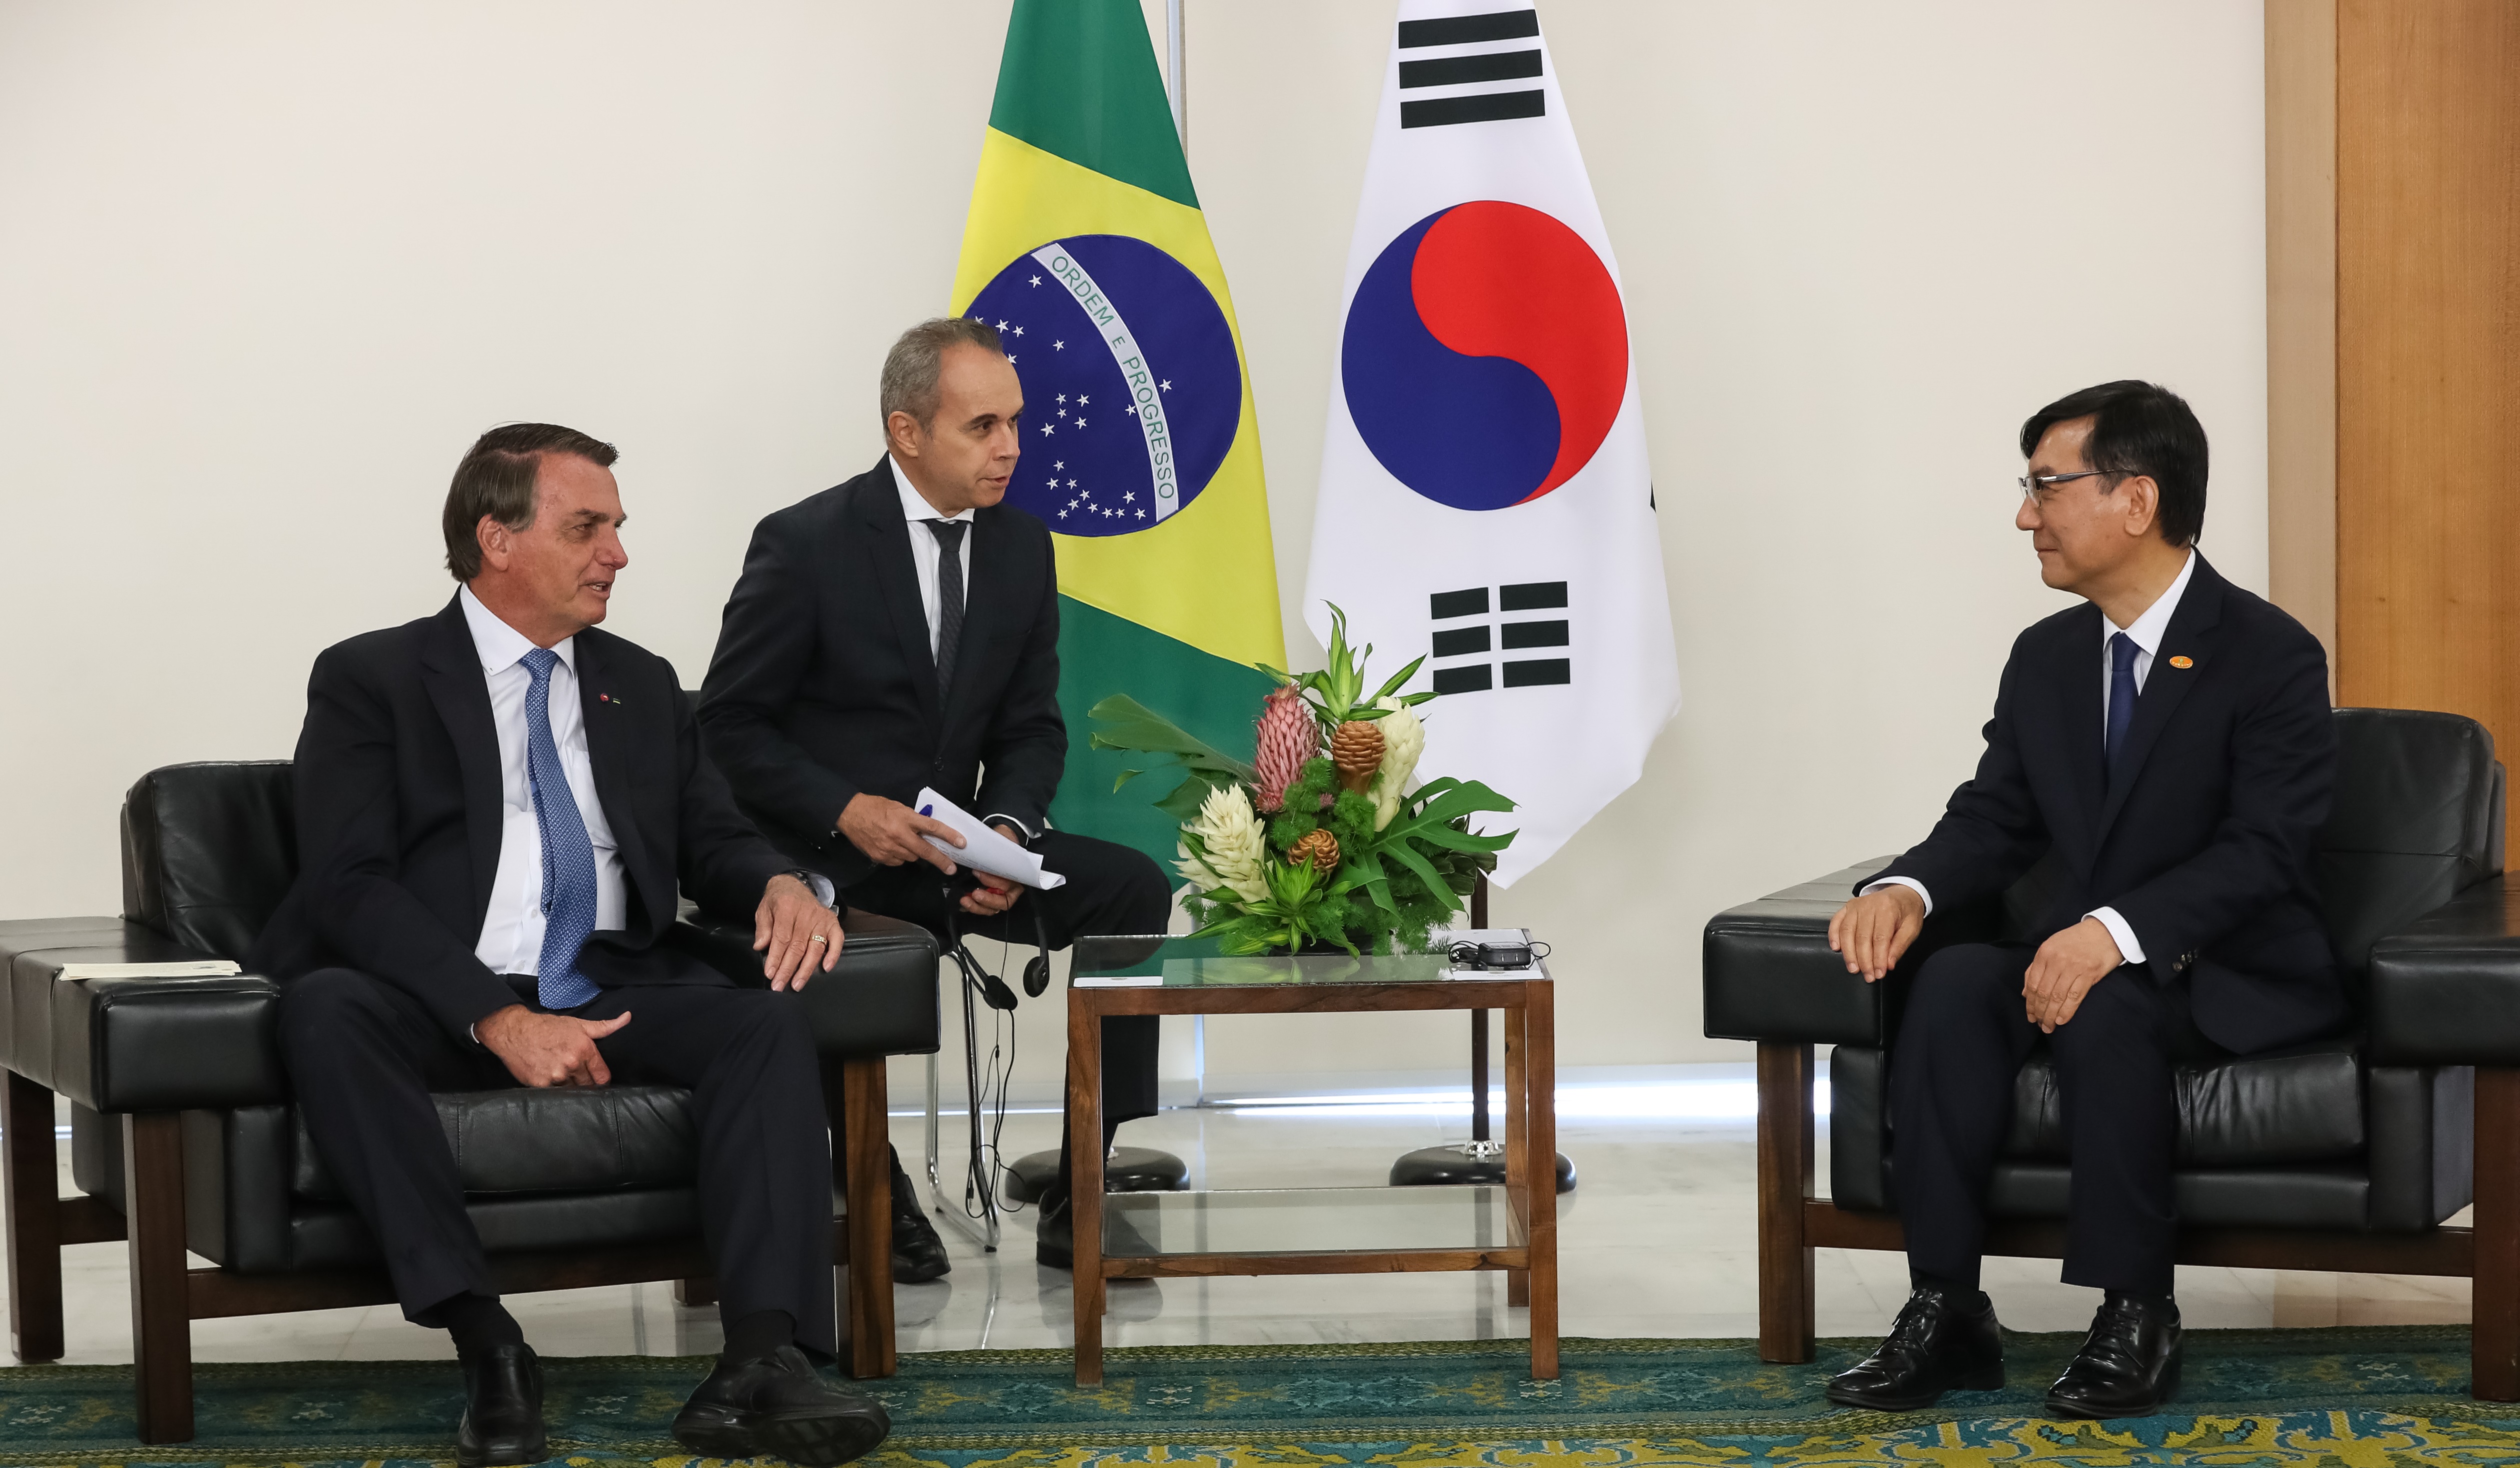 Embaixador da Coreia no Brasil Lim Ki-mo carta credencial 임기모 주브라질대사 신임장 제정 브라질 보우소나루 대통령